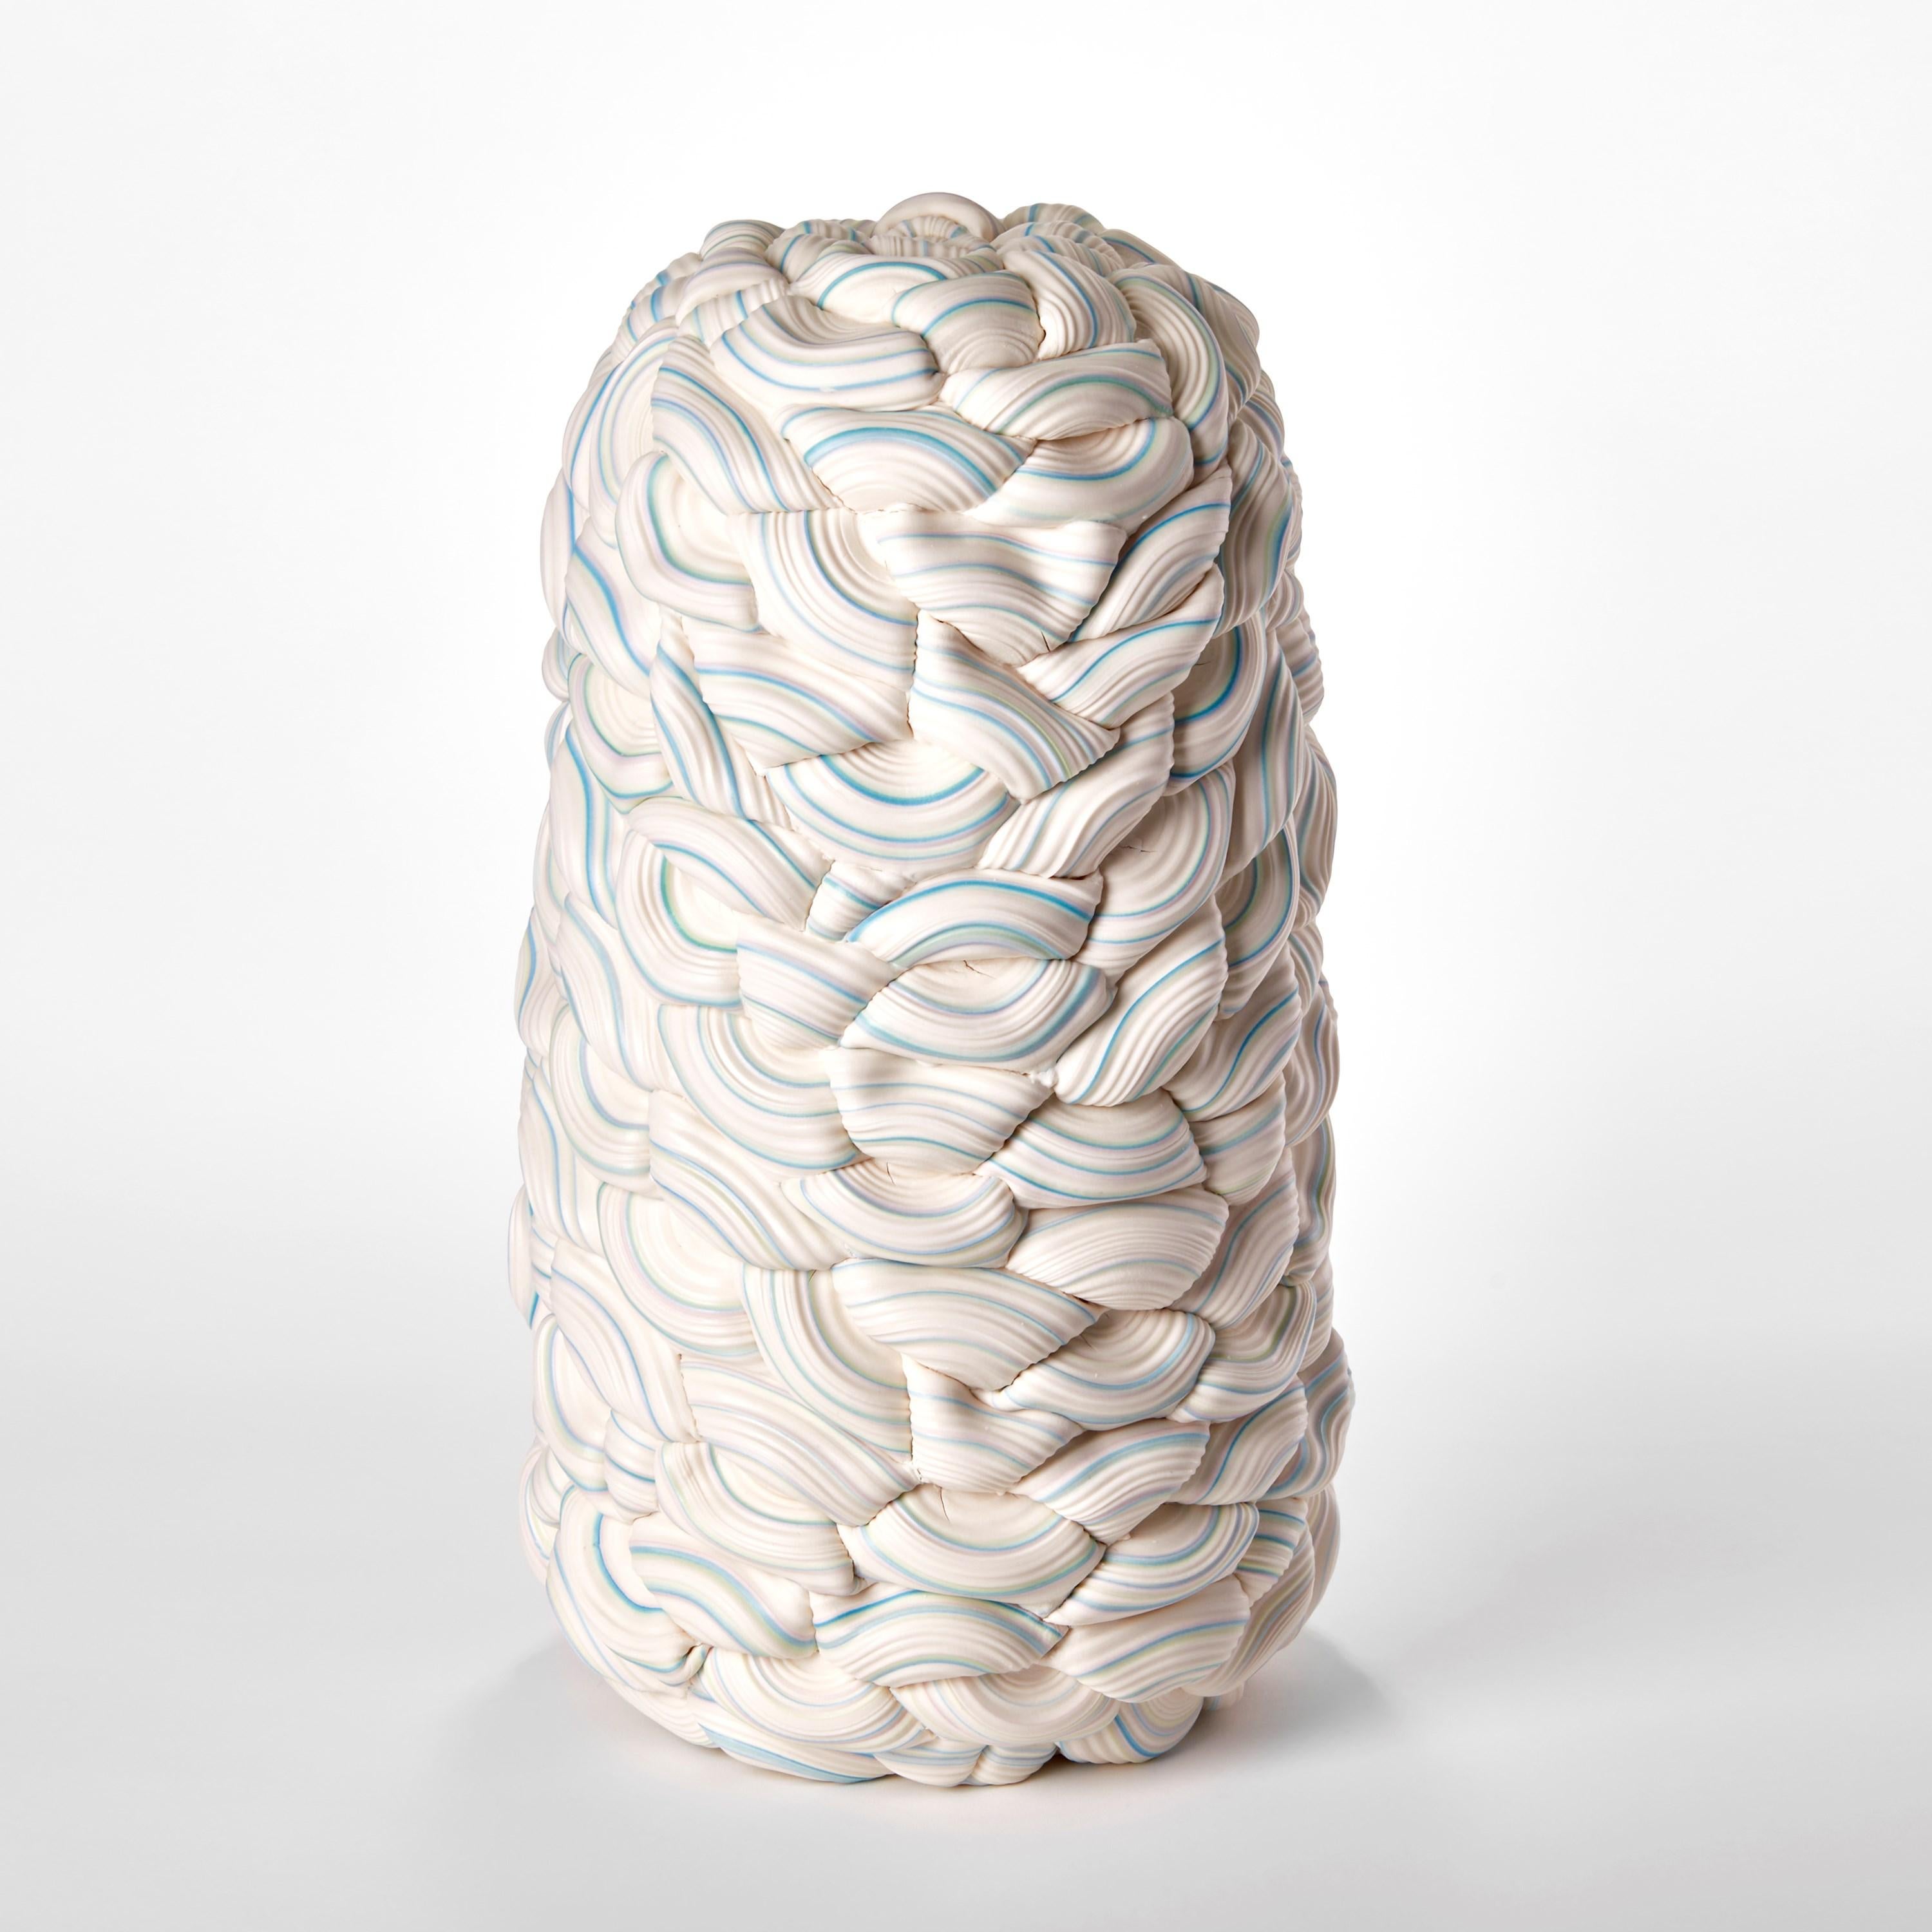 Organic Modern Striped Symmetry Fold III, aqua, jade & white porcelain vessel by Steven Edwards For Sale